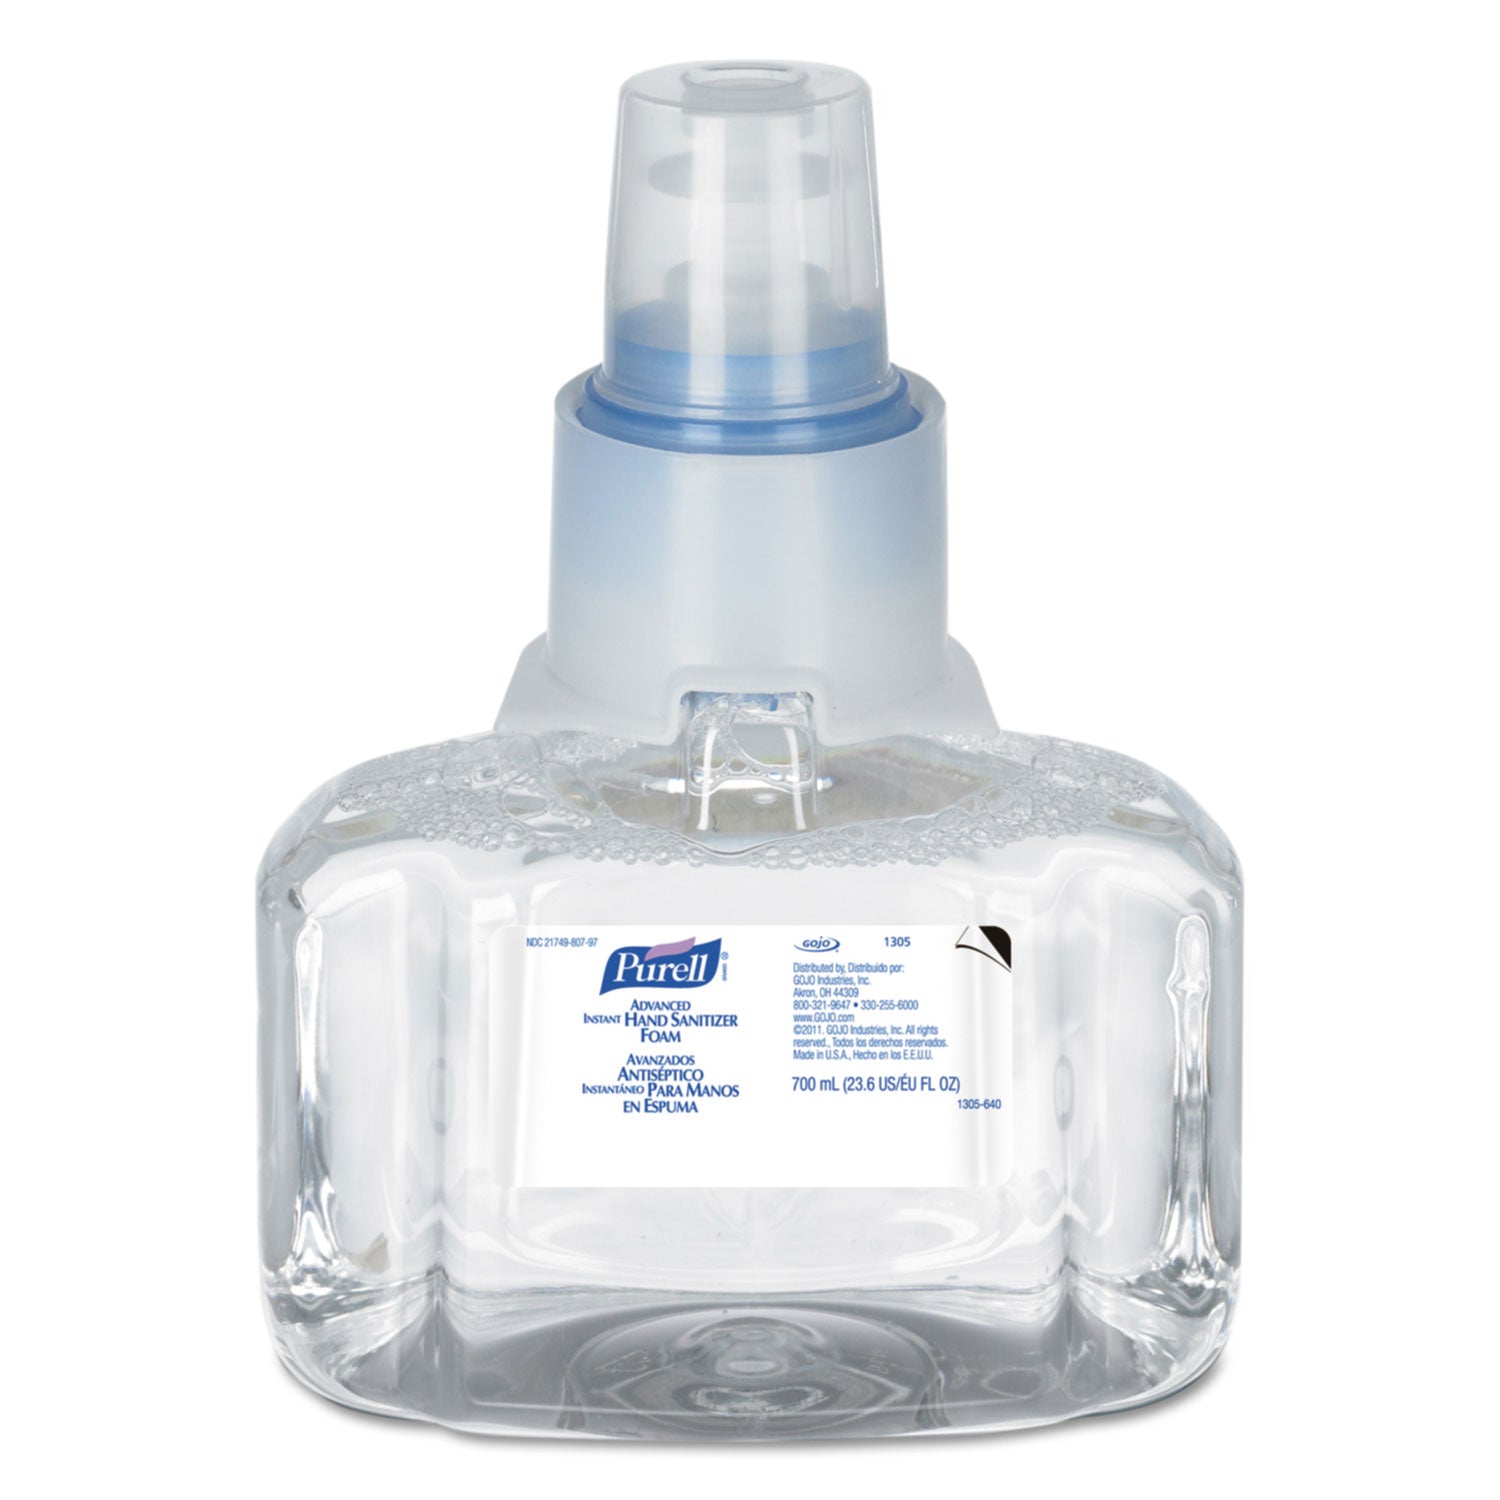 Advanced Hand Sanitizer Foam, For LTX-7 Dispensers, 700 mL Refill, Fragrance-Free - 